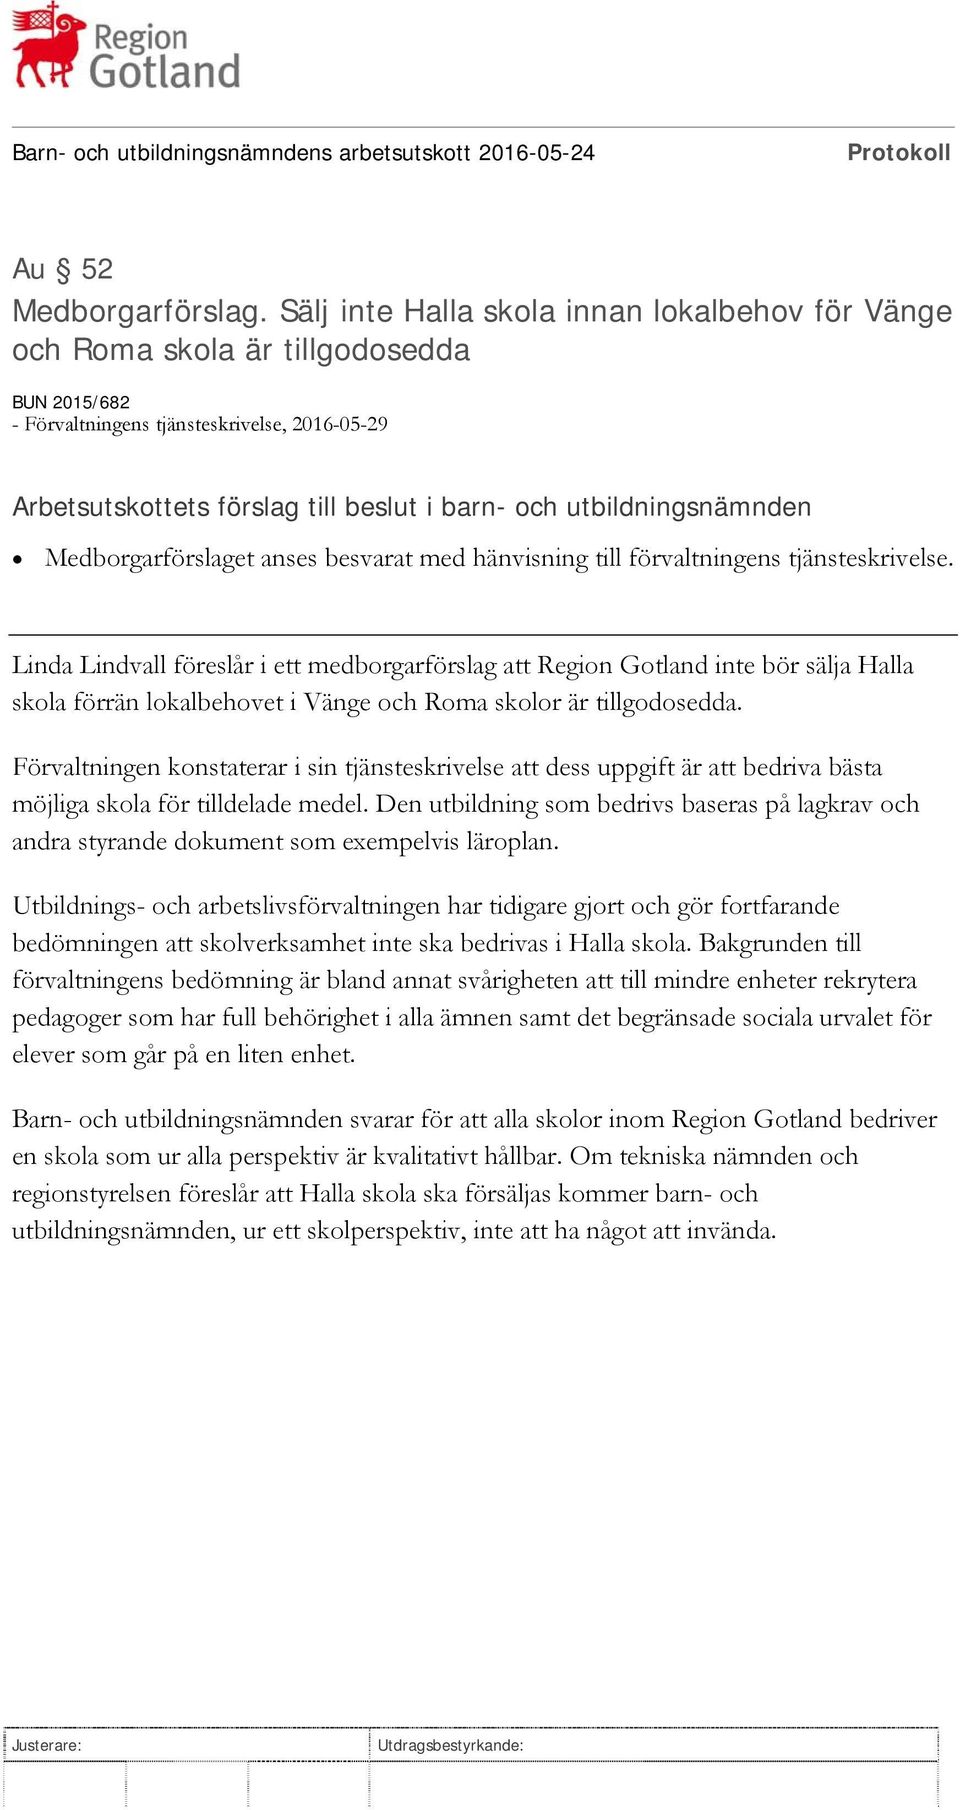 förvaltningens tjänsteskrivelse. Linda Lindvall föreslår i ett medborgarförslag att Region Gotland inte bör sälja Halla skola förrän lokalbehovet i Vänge och Roma skolor är tillgodosedda.